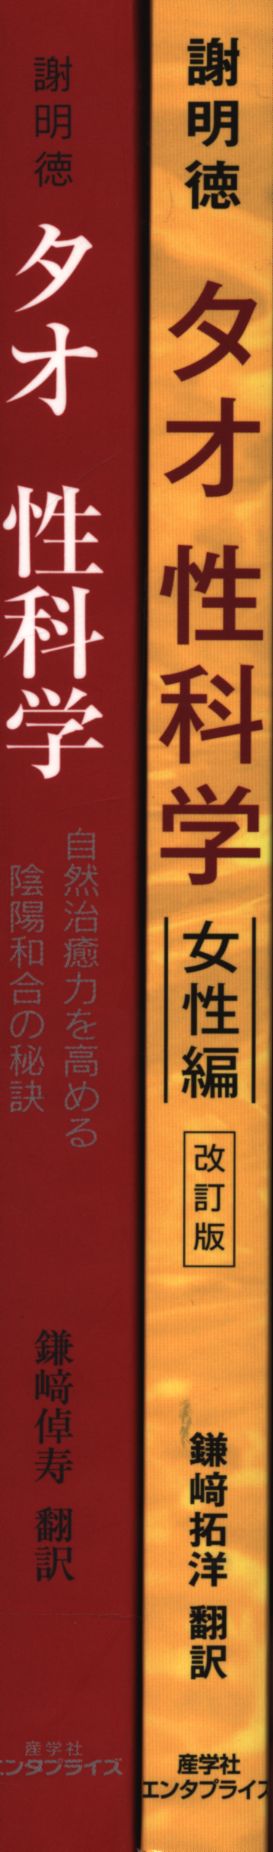 謝明徳(マンタク・チャ) タオ性科学 2冊セット 全2セット | まんだらけ ...